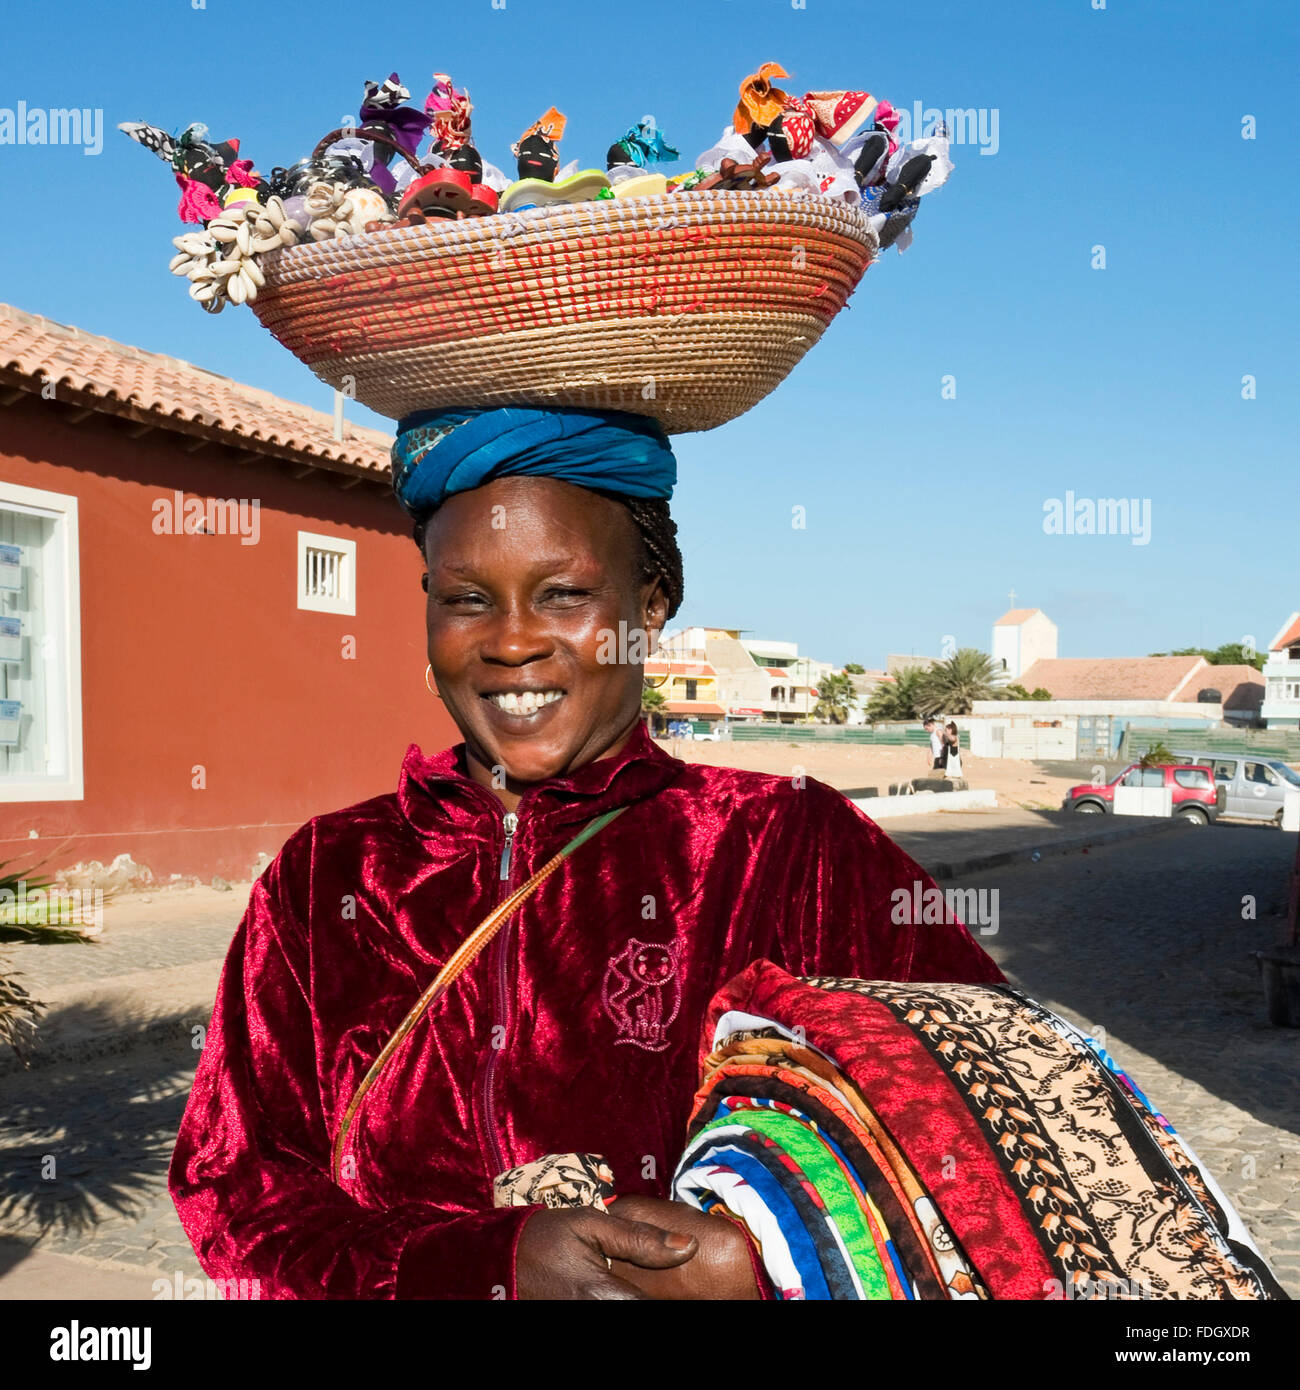 Quadratische Porträt einer lokalen kapverdischen Frau mit Souvenirs aus einem Korb auf dem Kopf in Kap Verde Inseln ausgeglichen. Stockfoto